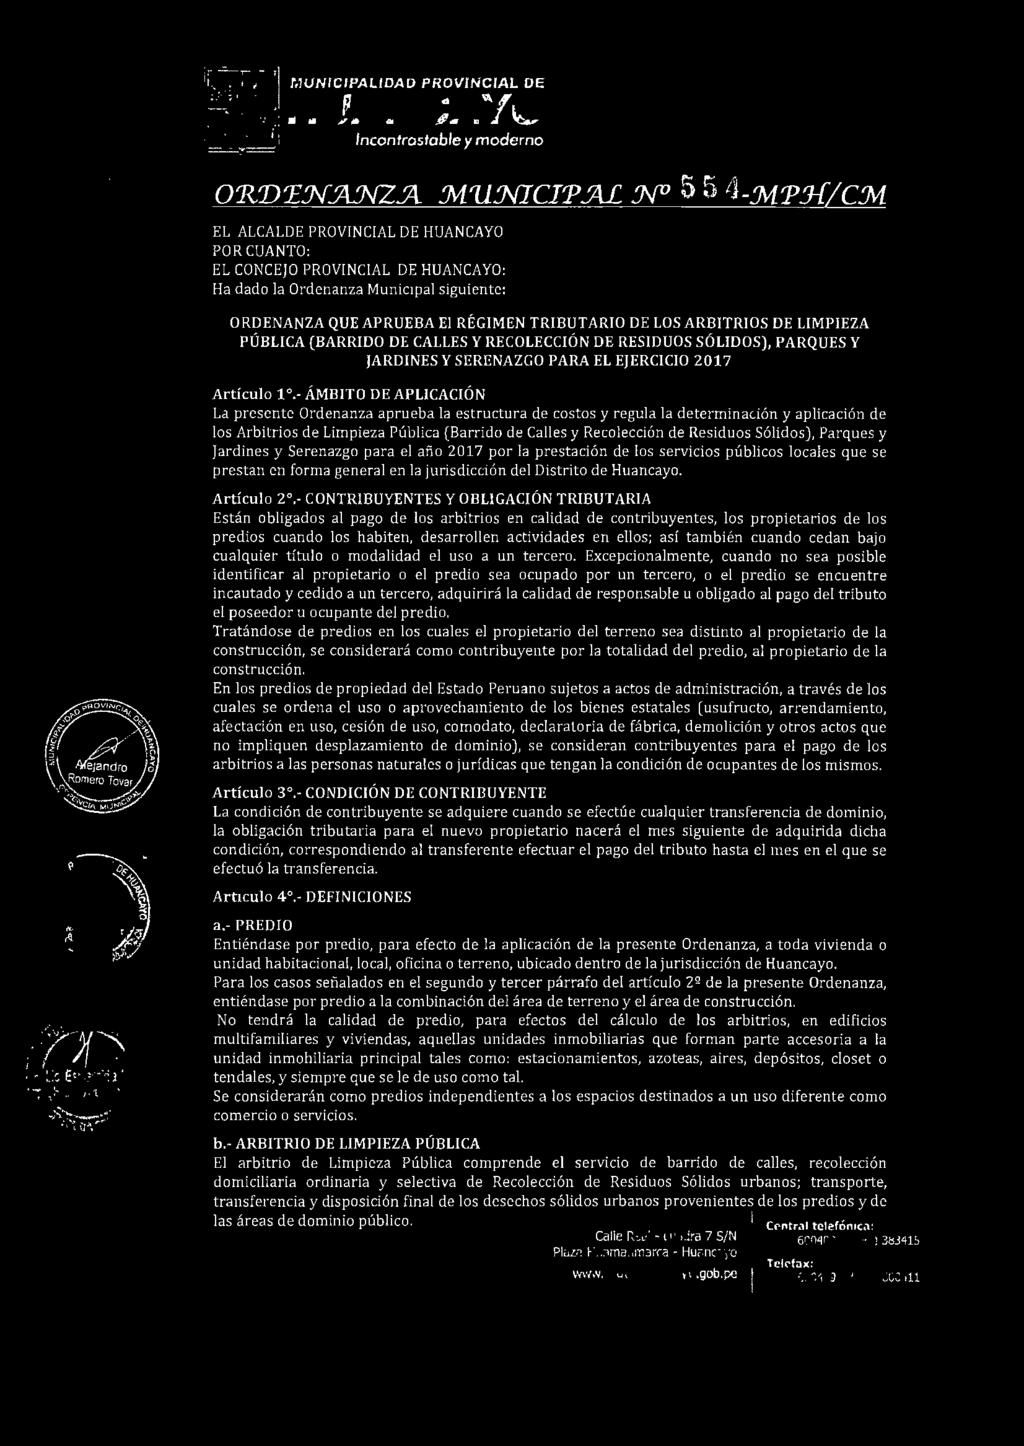 TRIBUTARIO DE LOS ARBITRIOS DE LIMPIEZA PÚBLICA (BARRIDO DE CALLES Y RECOLECCIÓN DE RESIDUOS SÓLIDOS), PARQUES Y JARDINES Y SERENAZGO PARA EL EJERCICIO 2017 Artículo 1 º.